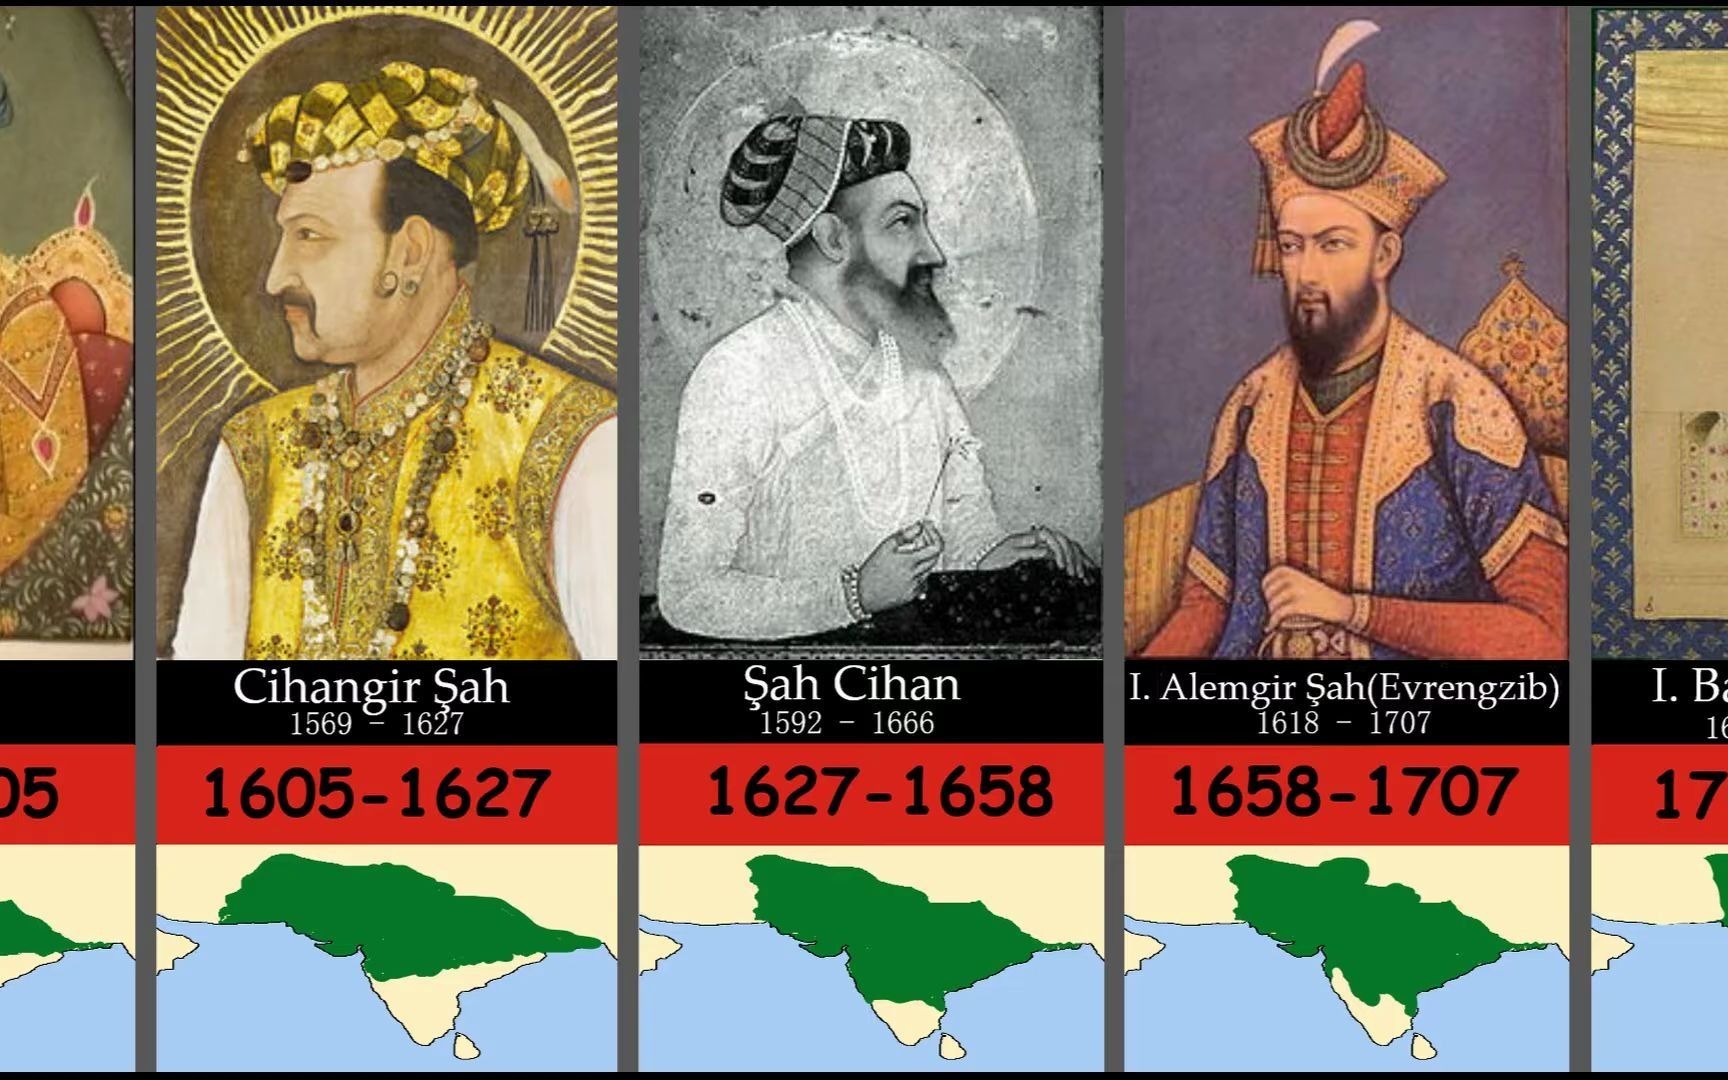 莫卧儿帝国历任皇帝的时间表(包含其疆域与统治者变化)